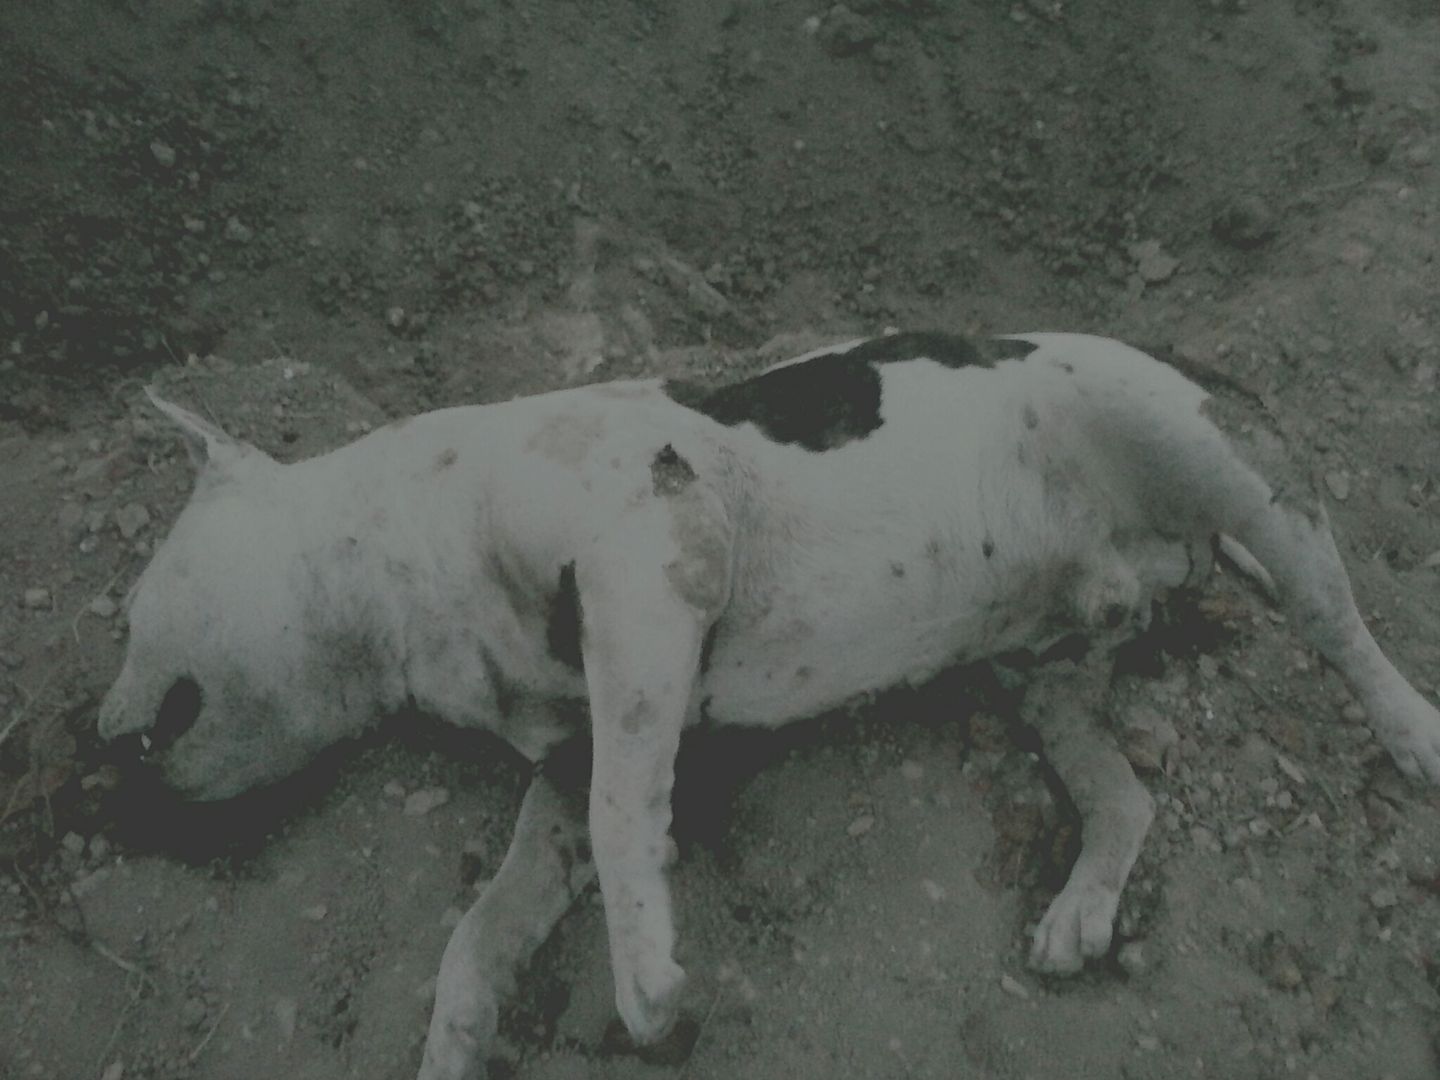 Διαμαρτυρήθηκαν για τη δολοφονία του σκύλου στην Αίγινα (βίντεο)